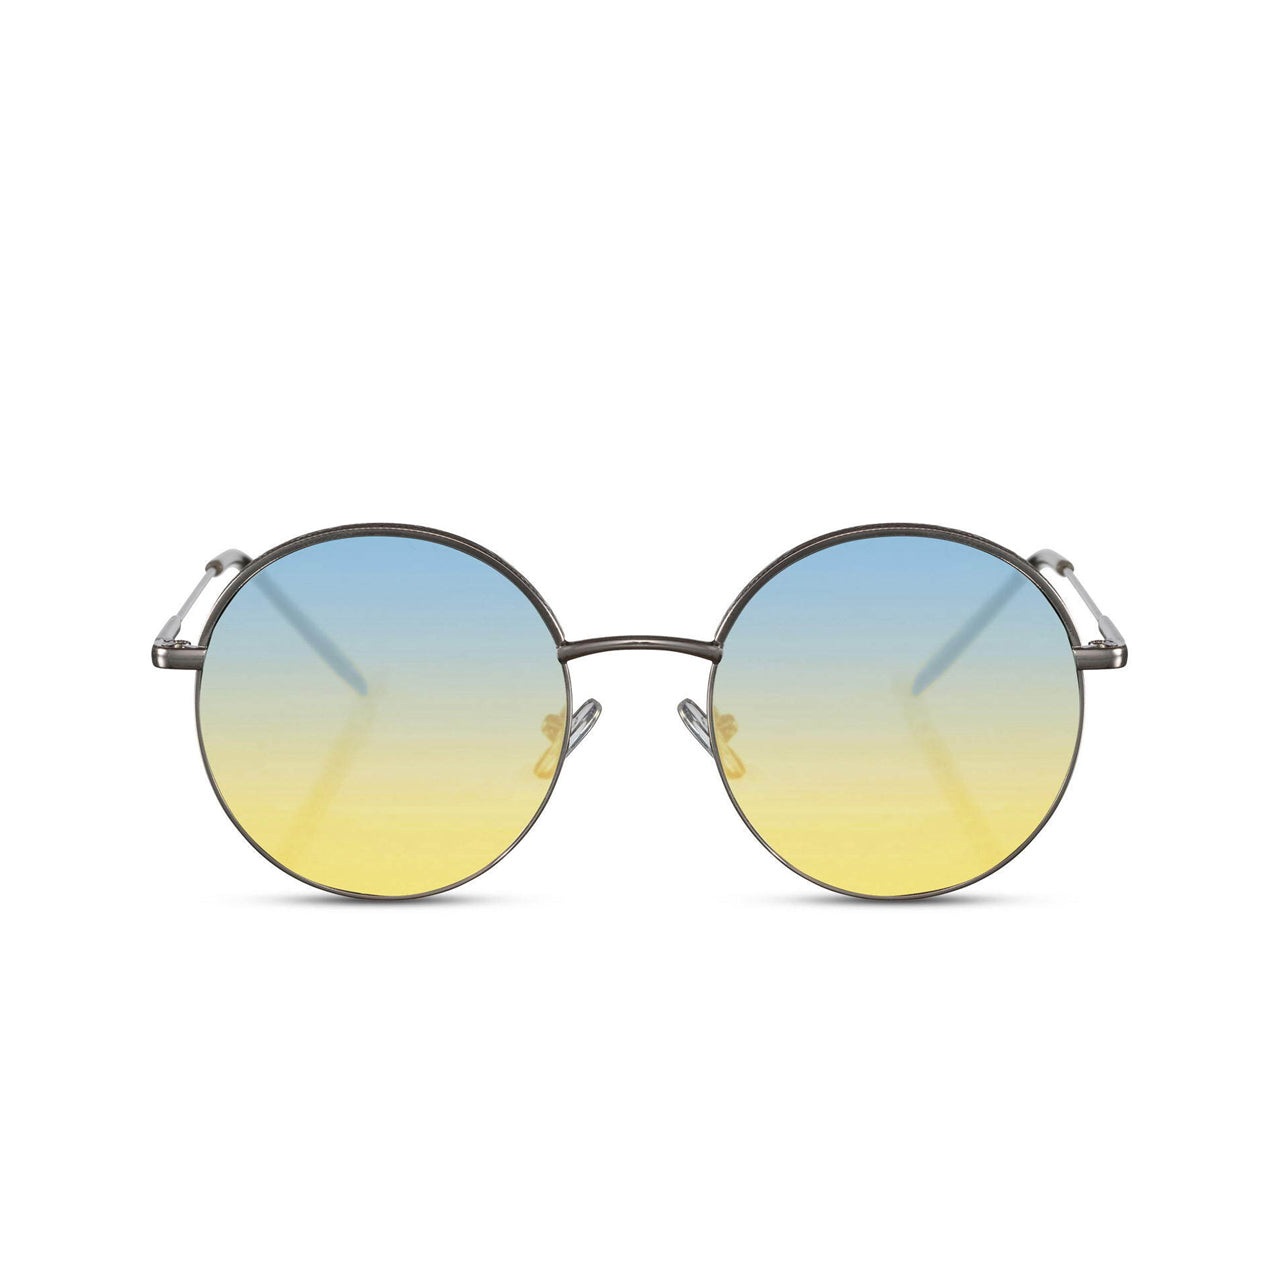 Snash - Sonnenbrille Hippie Life